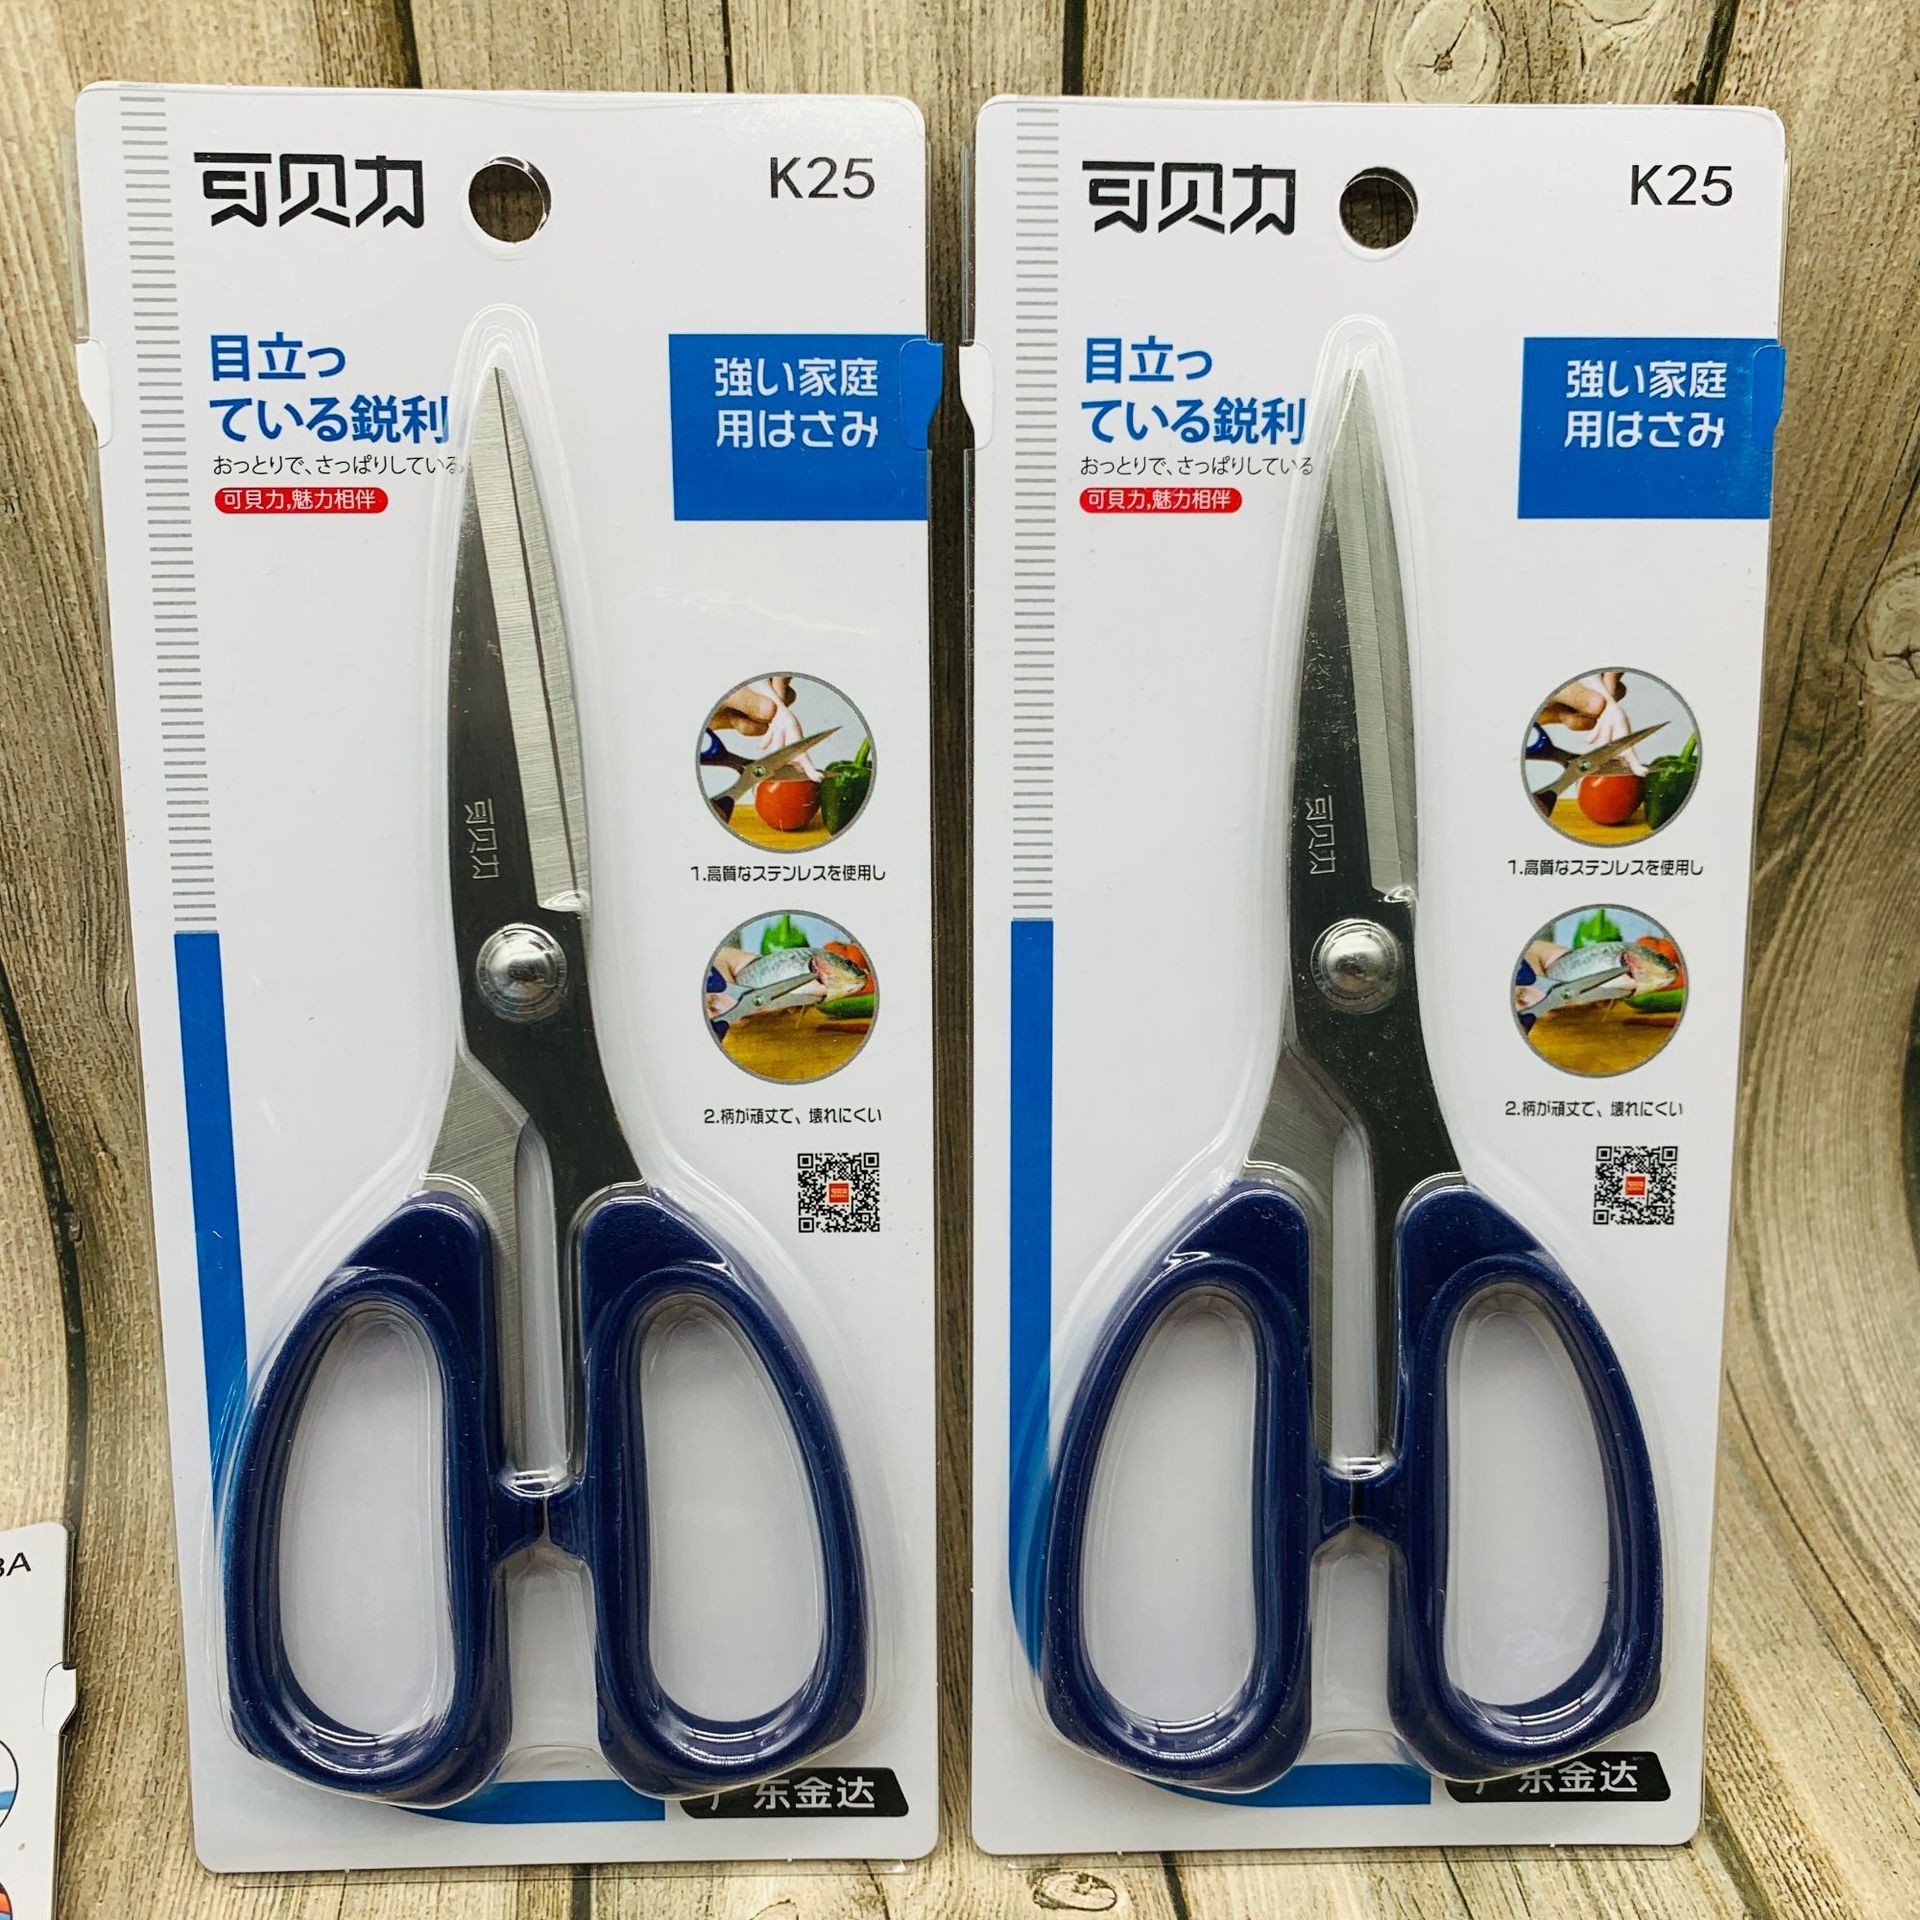 剪刀  不锈钢剪刀广东金达产品品质可靠数量有限清库存价格超实惠